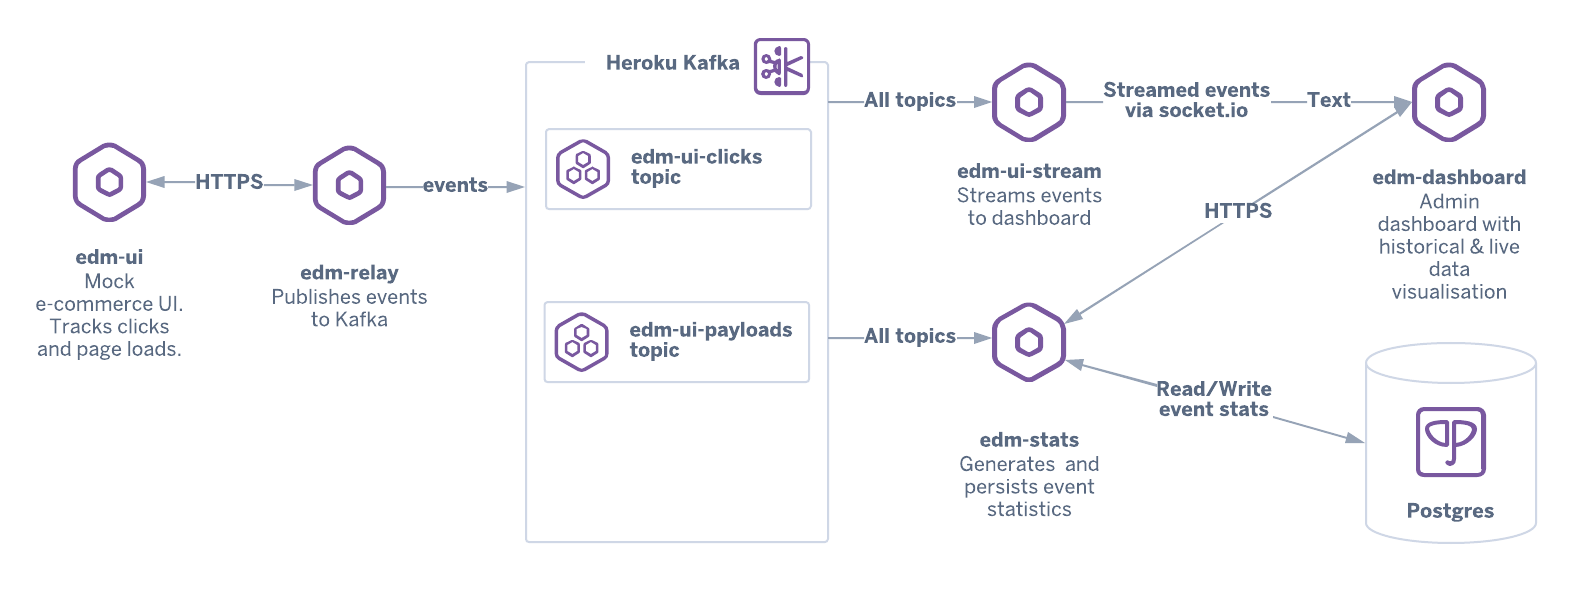 Apache Kafka 経由でマイクロサービスをダッシュボードおよびバックエンドデータサービスに接続するアーキテクチャ図